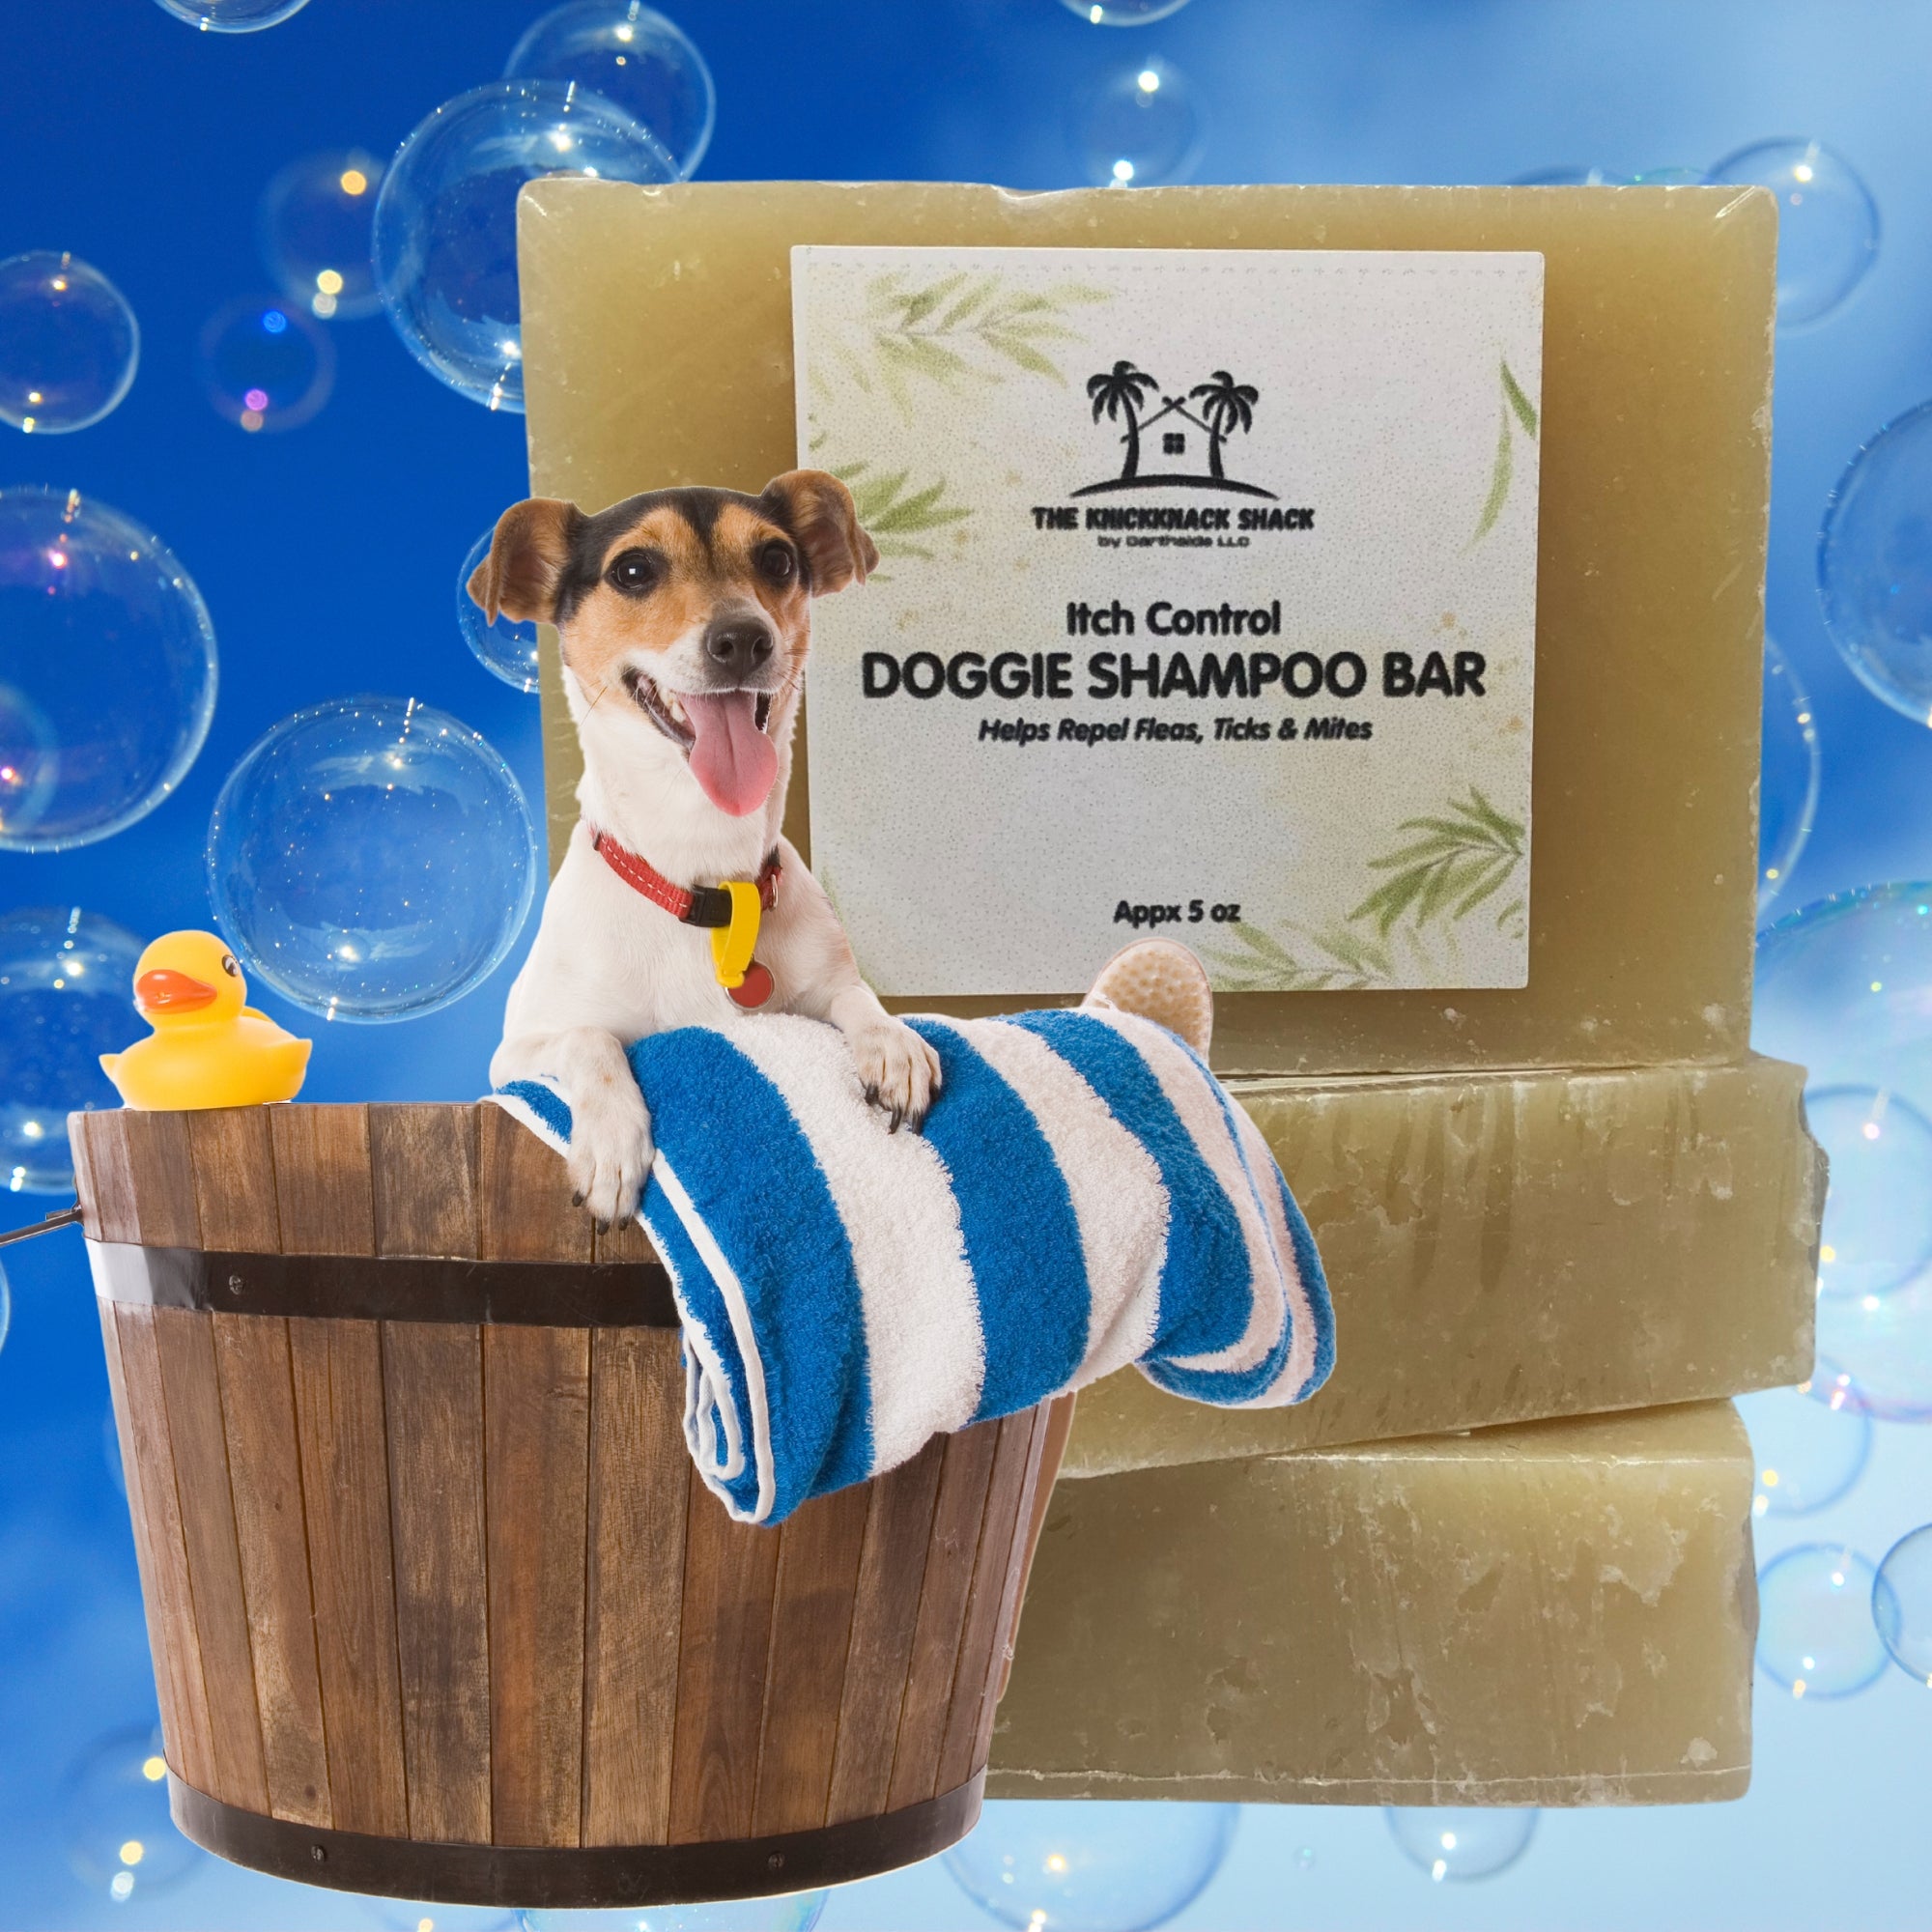 Doggie Shampoo Bar